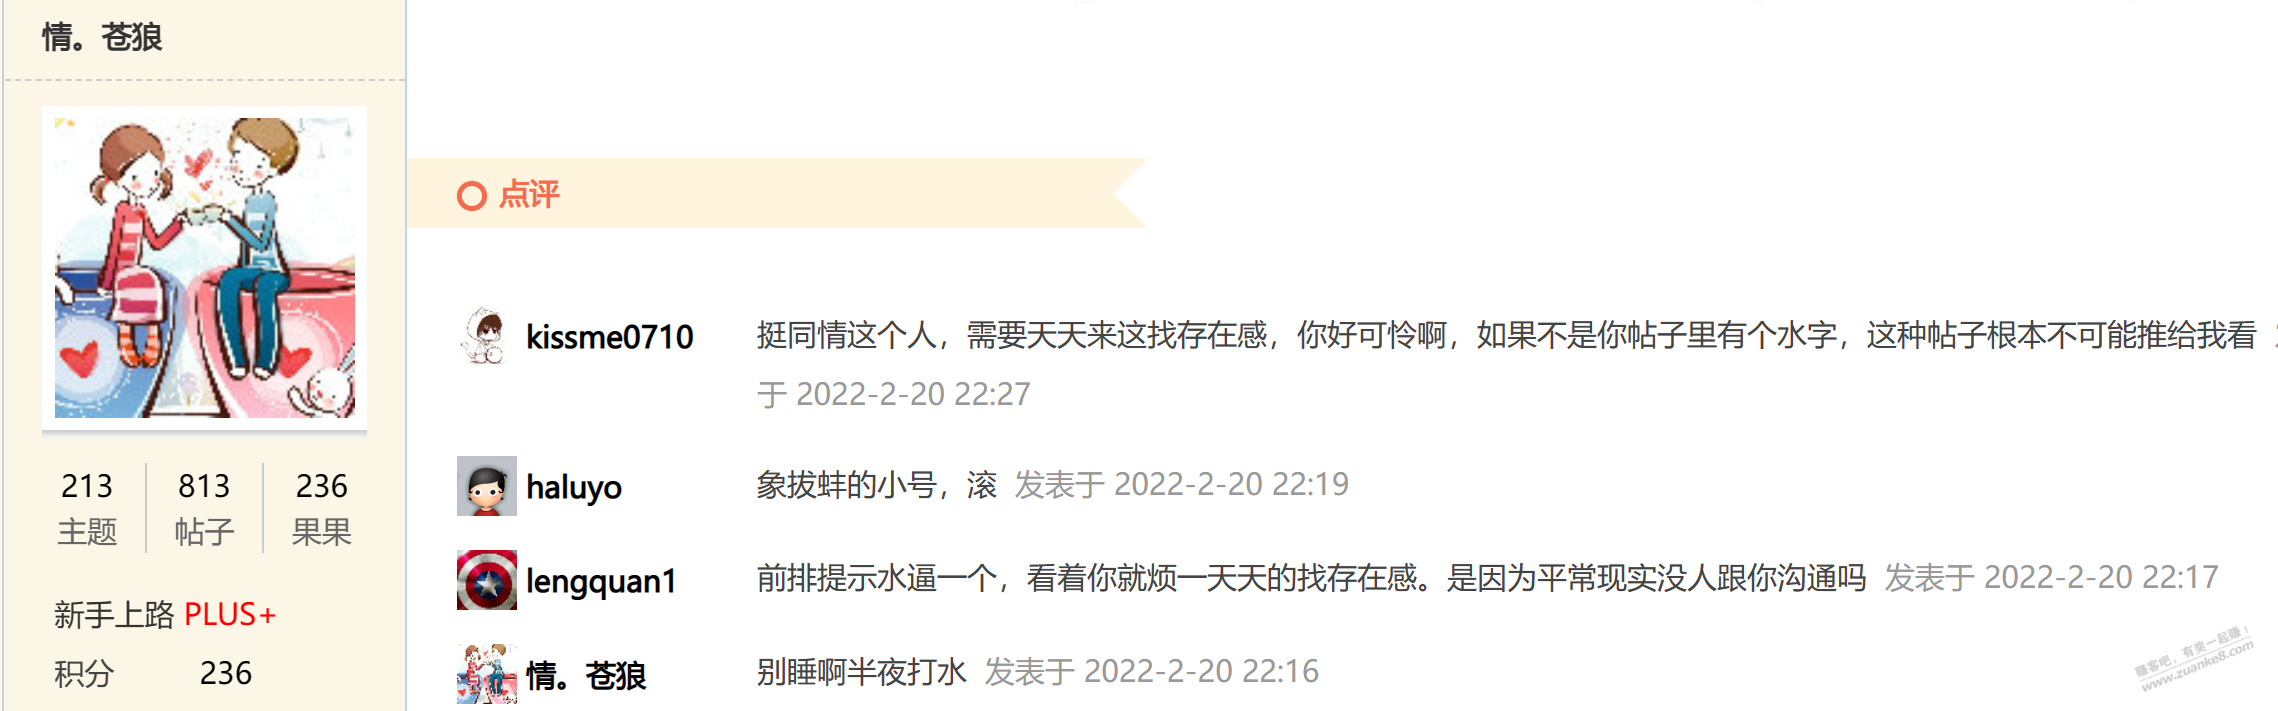 通报批评:河南的乡镇公务员关某-不要再来消遣网友了-惠小助(52huixz.com)